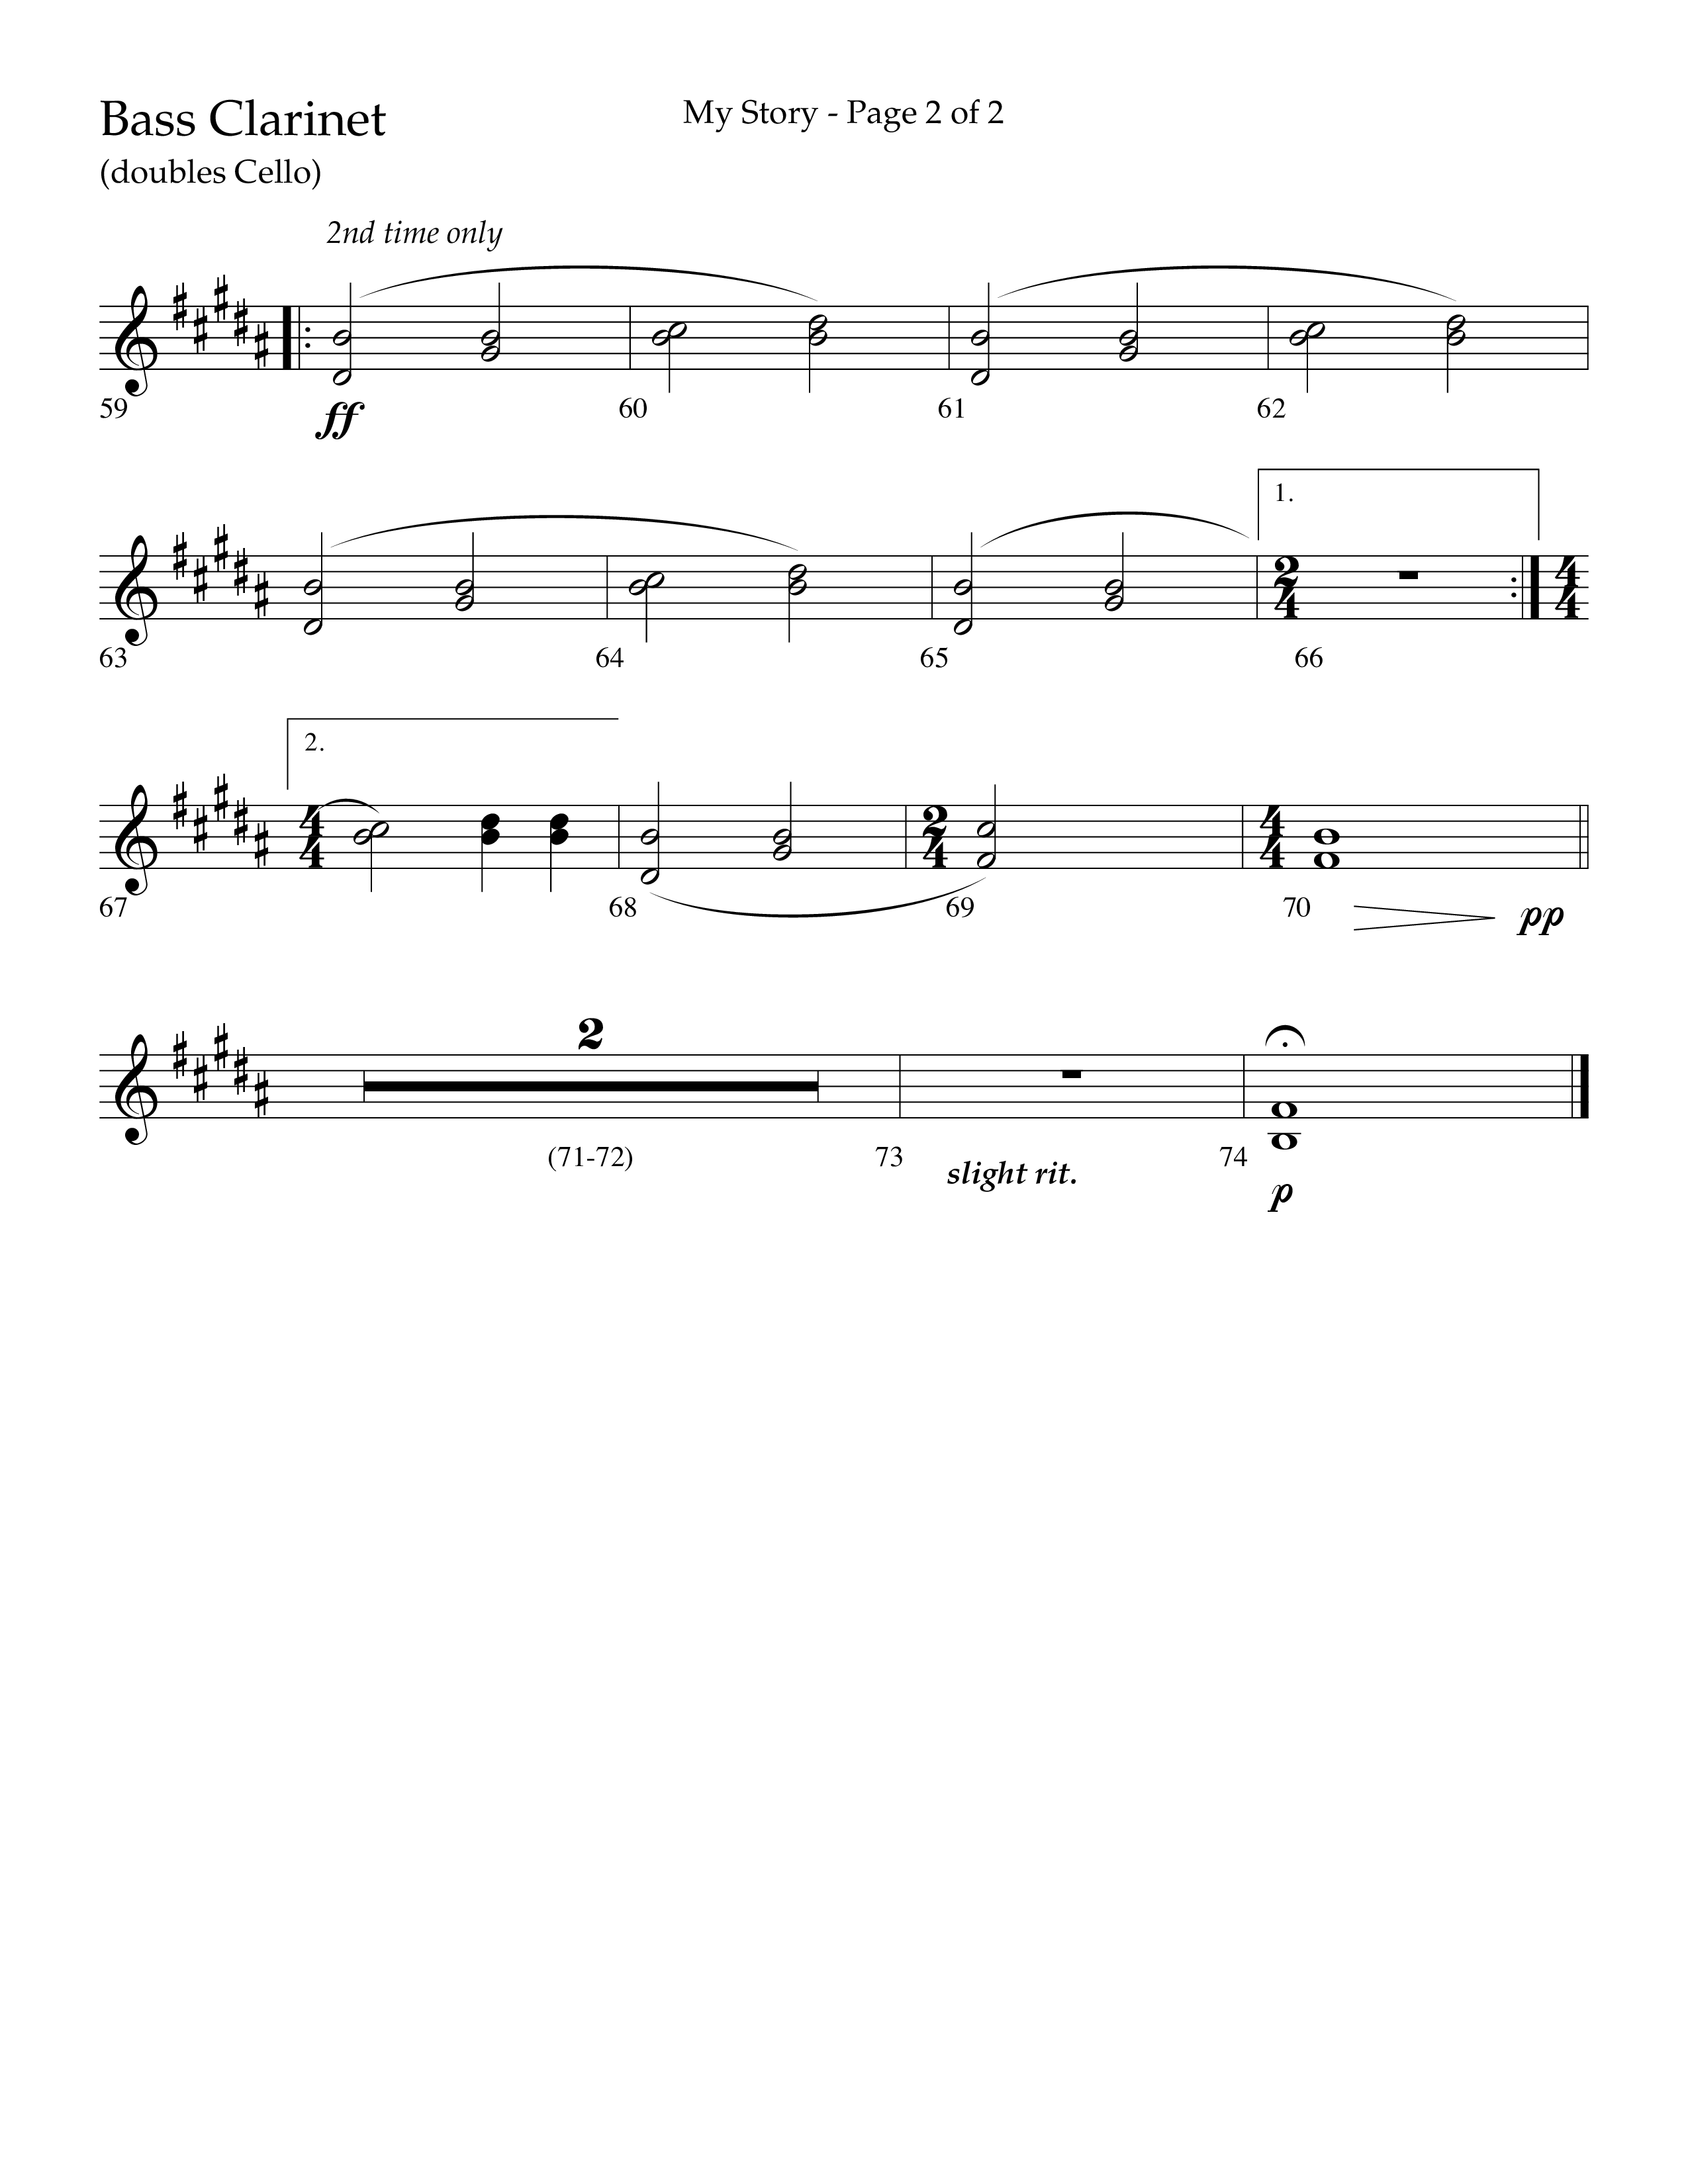 My Story (Choral Anthem SATB) Bass Clarinet (Lifeway Choral / Arr. Craig Adams)